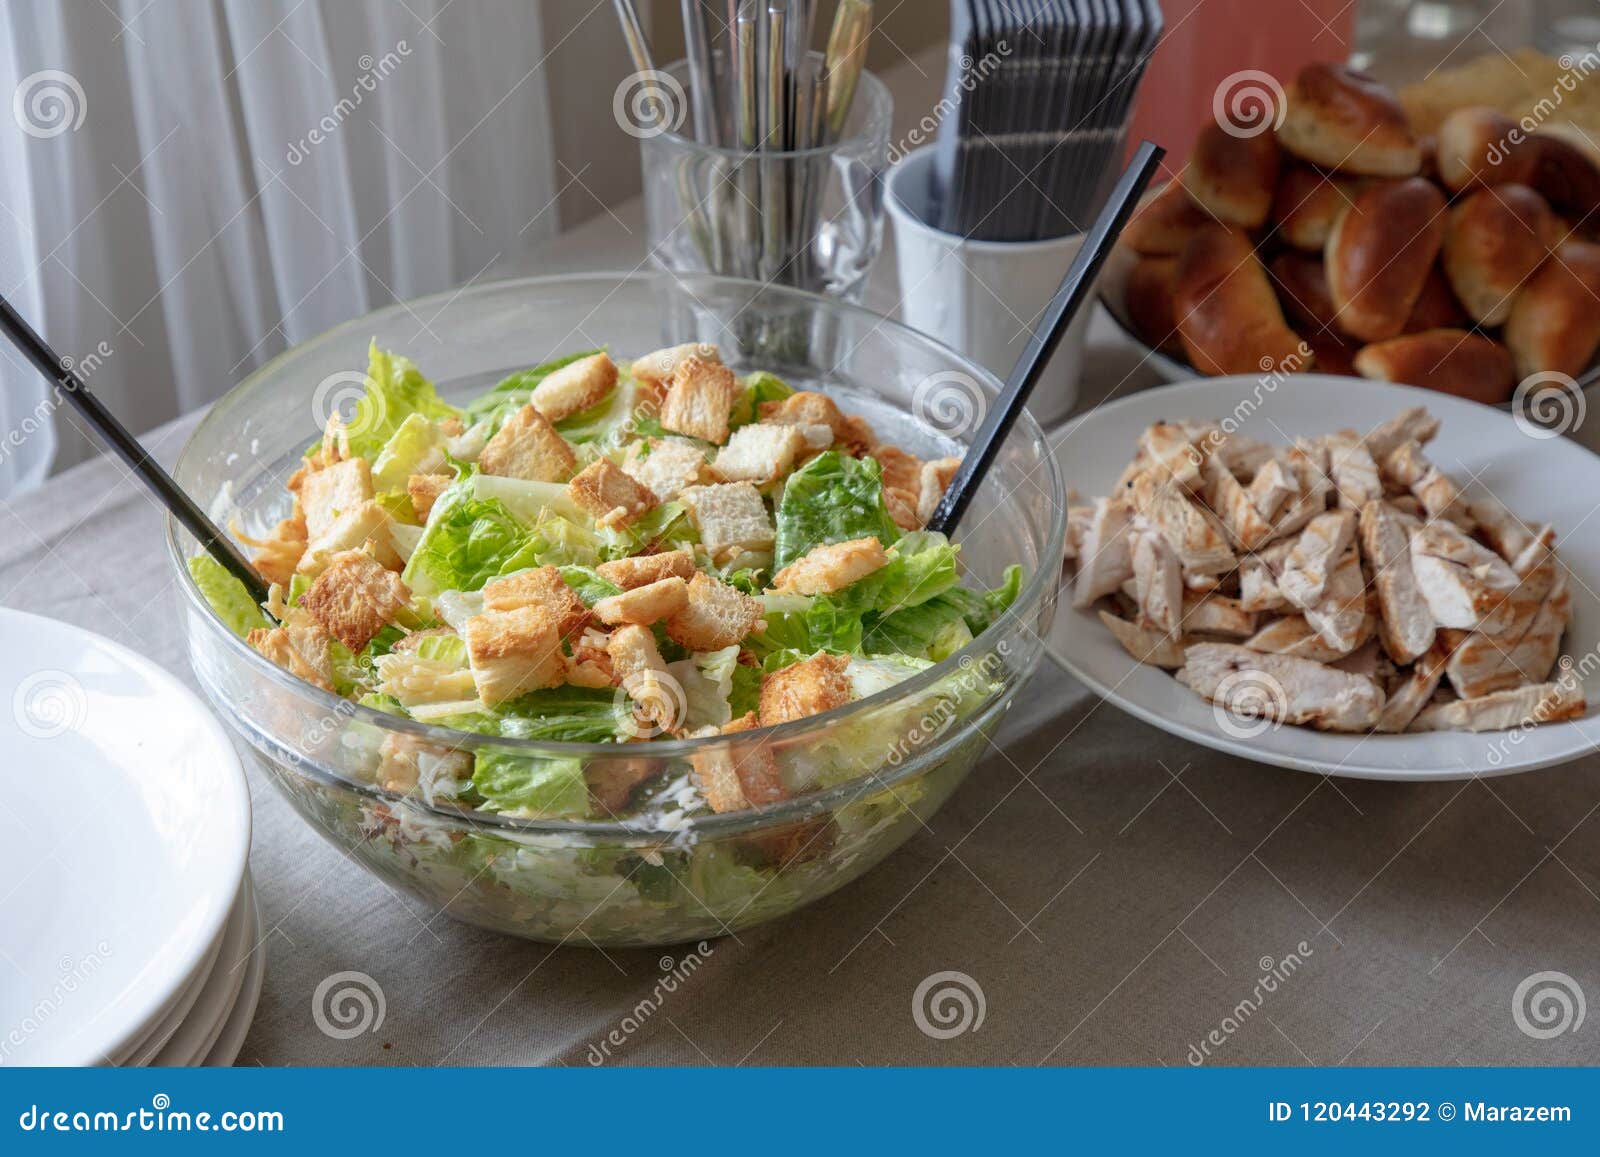 bowl of cesar salad